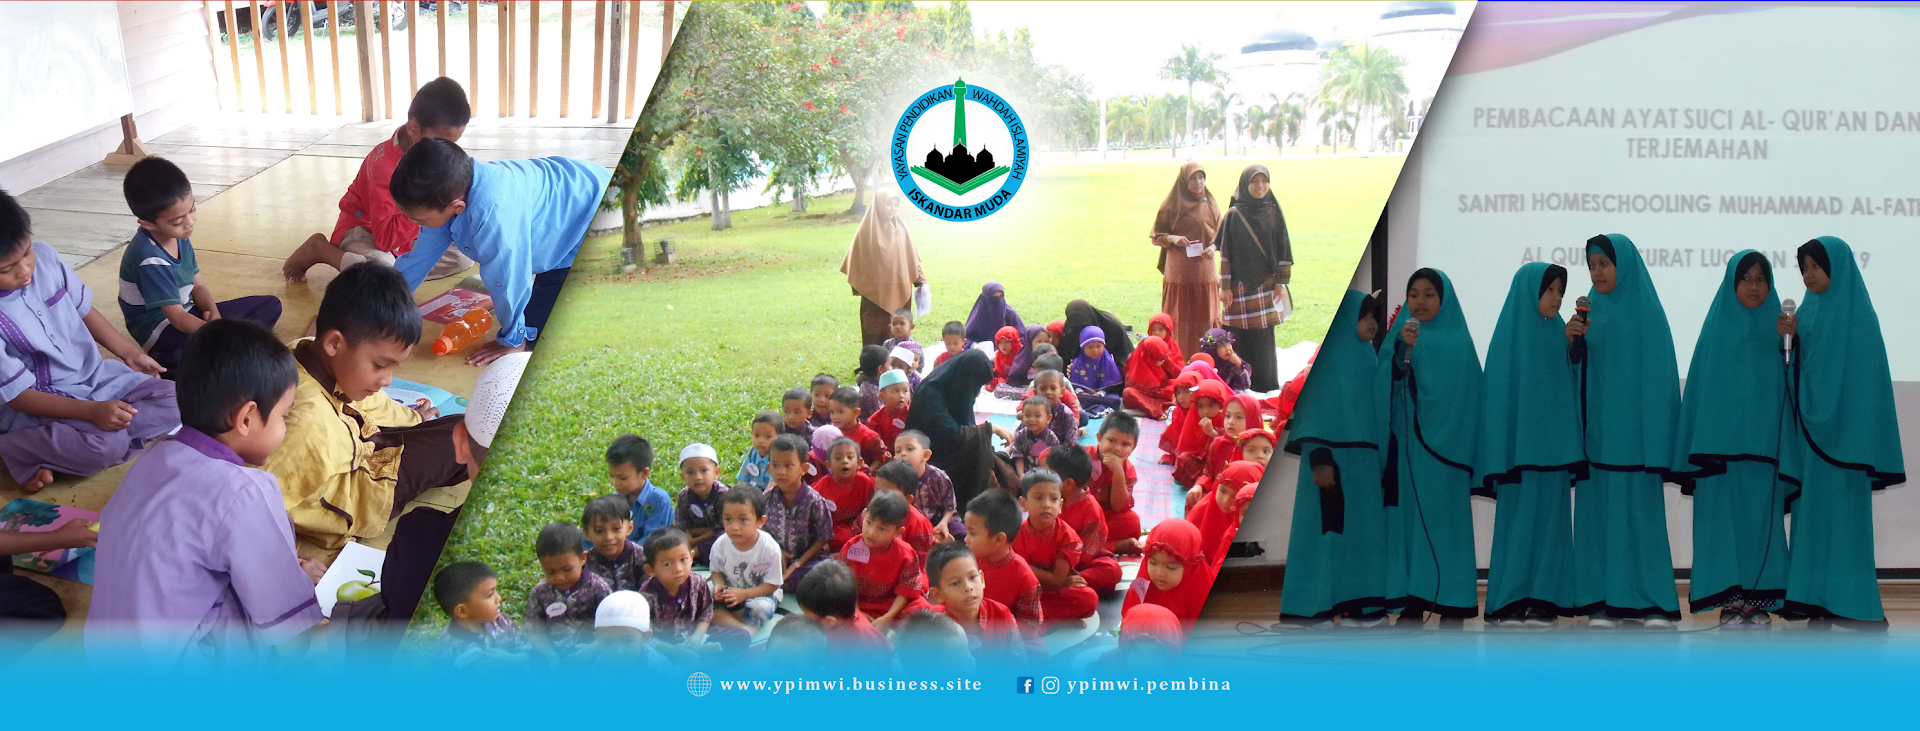 Gambar Yayasan Pendidikan Iskandar Muda Wahdah Islamiyah (pembina)